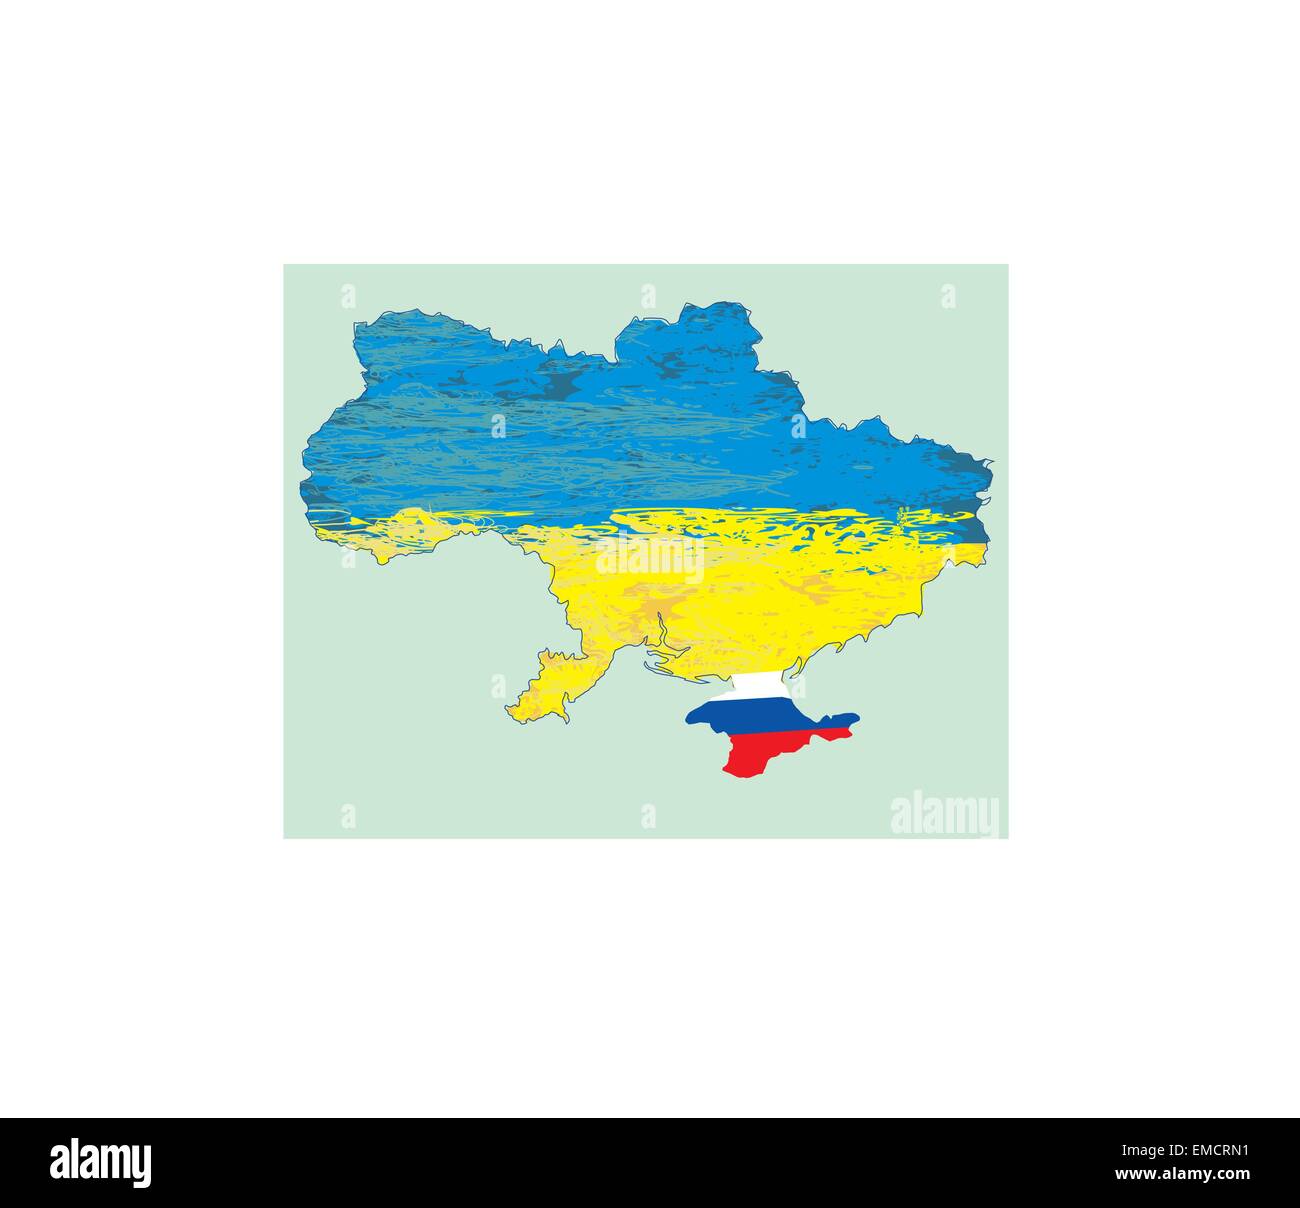 Ukraine vector map , Russia in Crimea Stock Vector